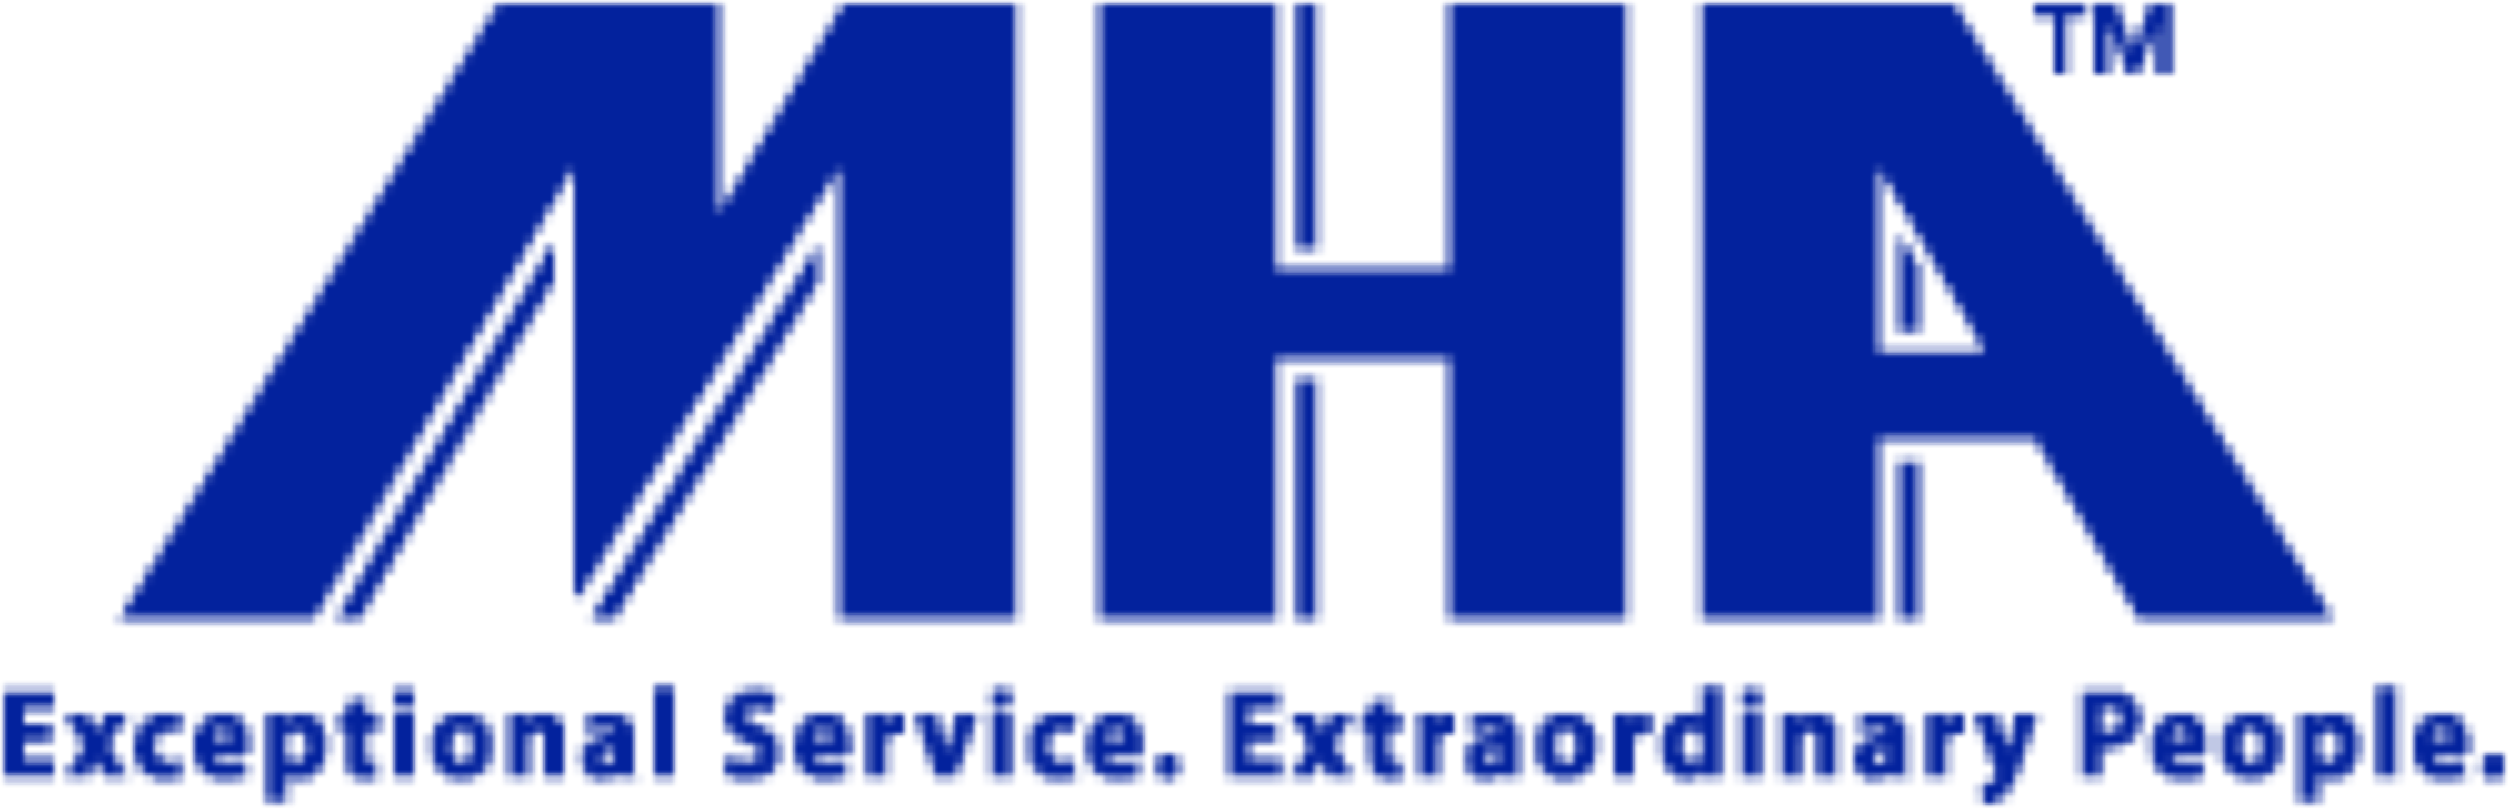 Mha logo